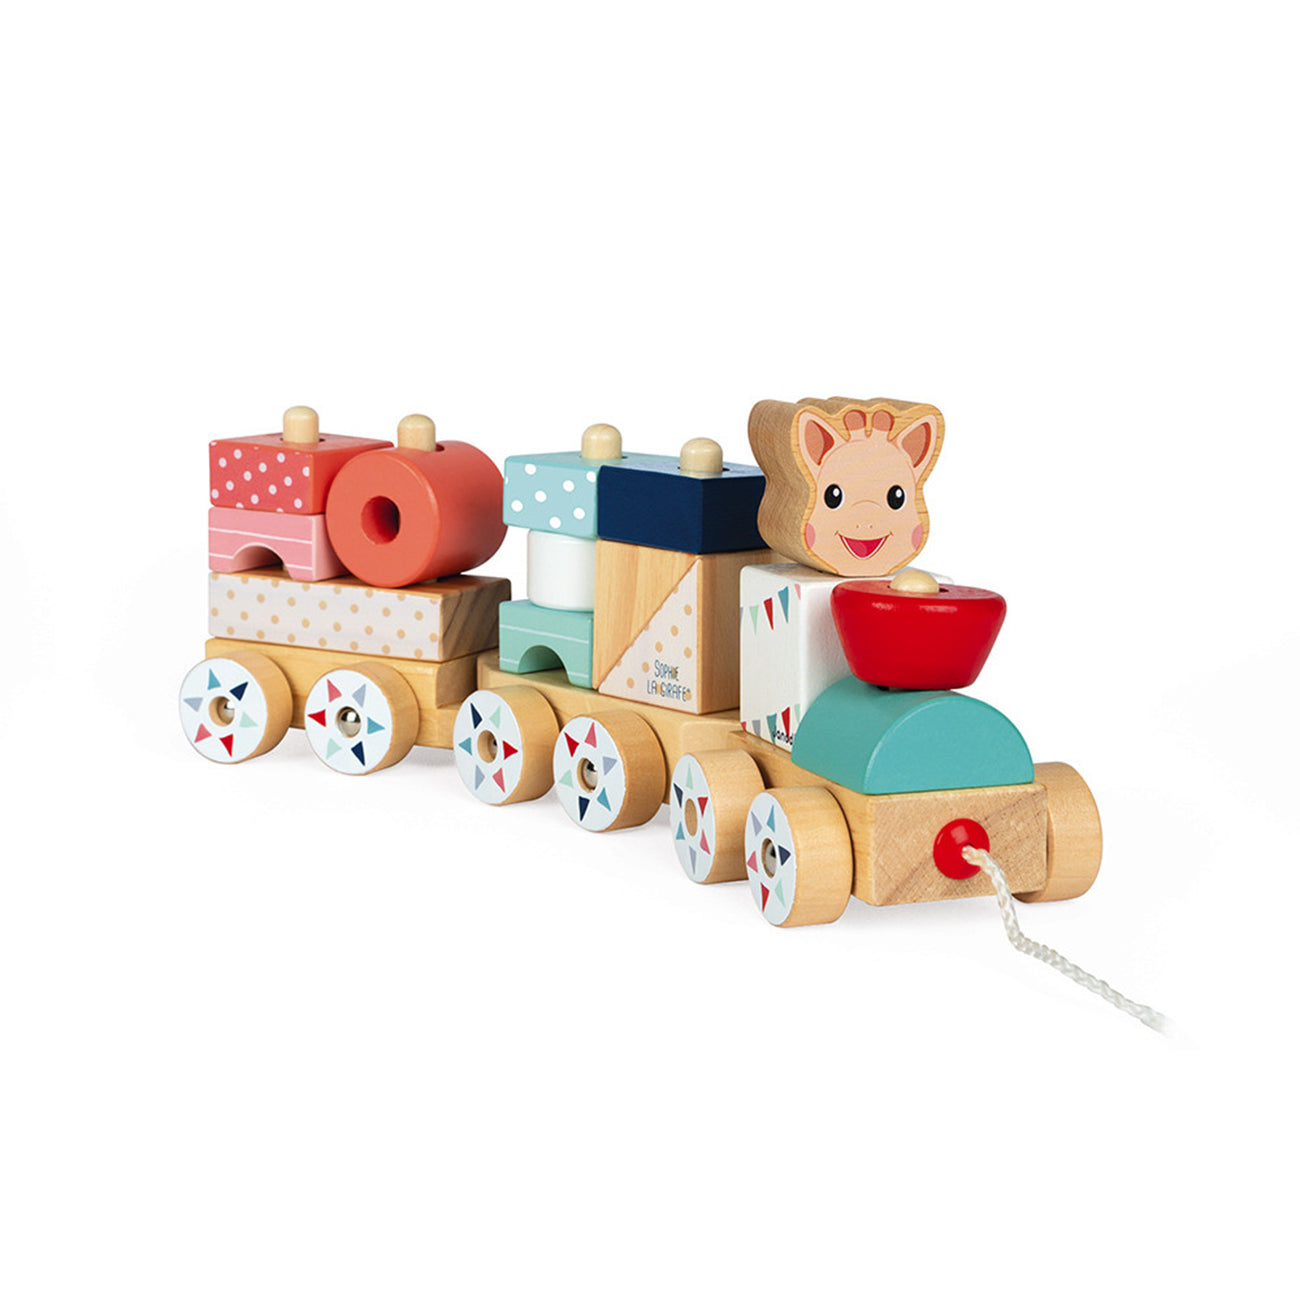 Trenulet cu vagoane si cuburi sortatoare pentru copii, Sophie la girafe, din lemn, +12 luni, Janod